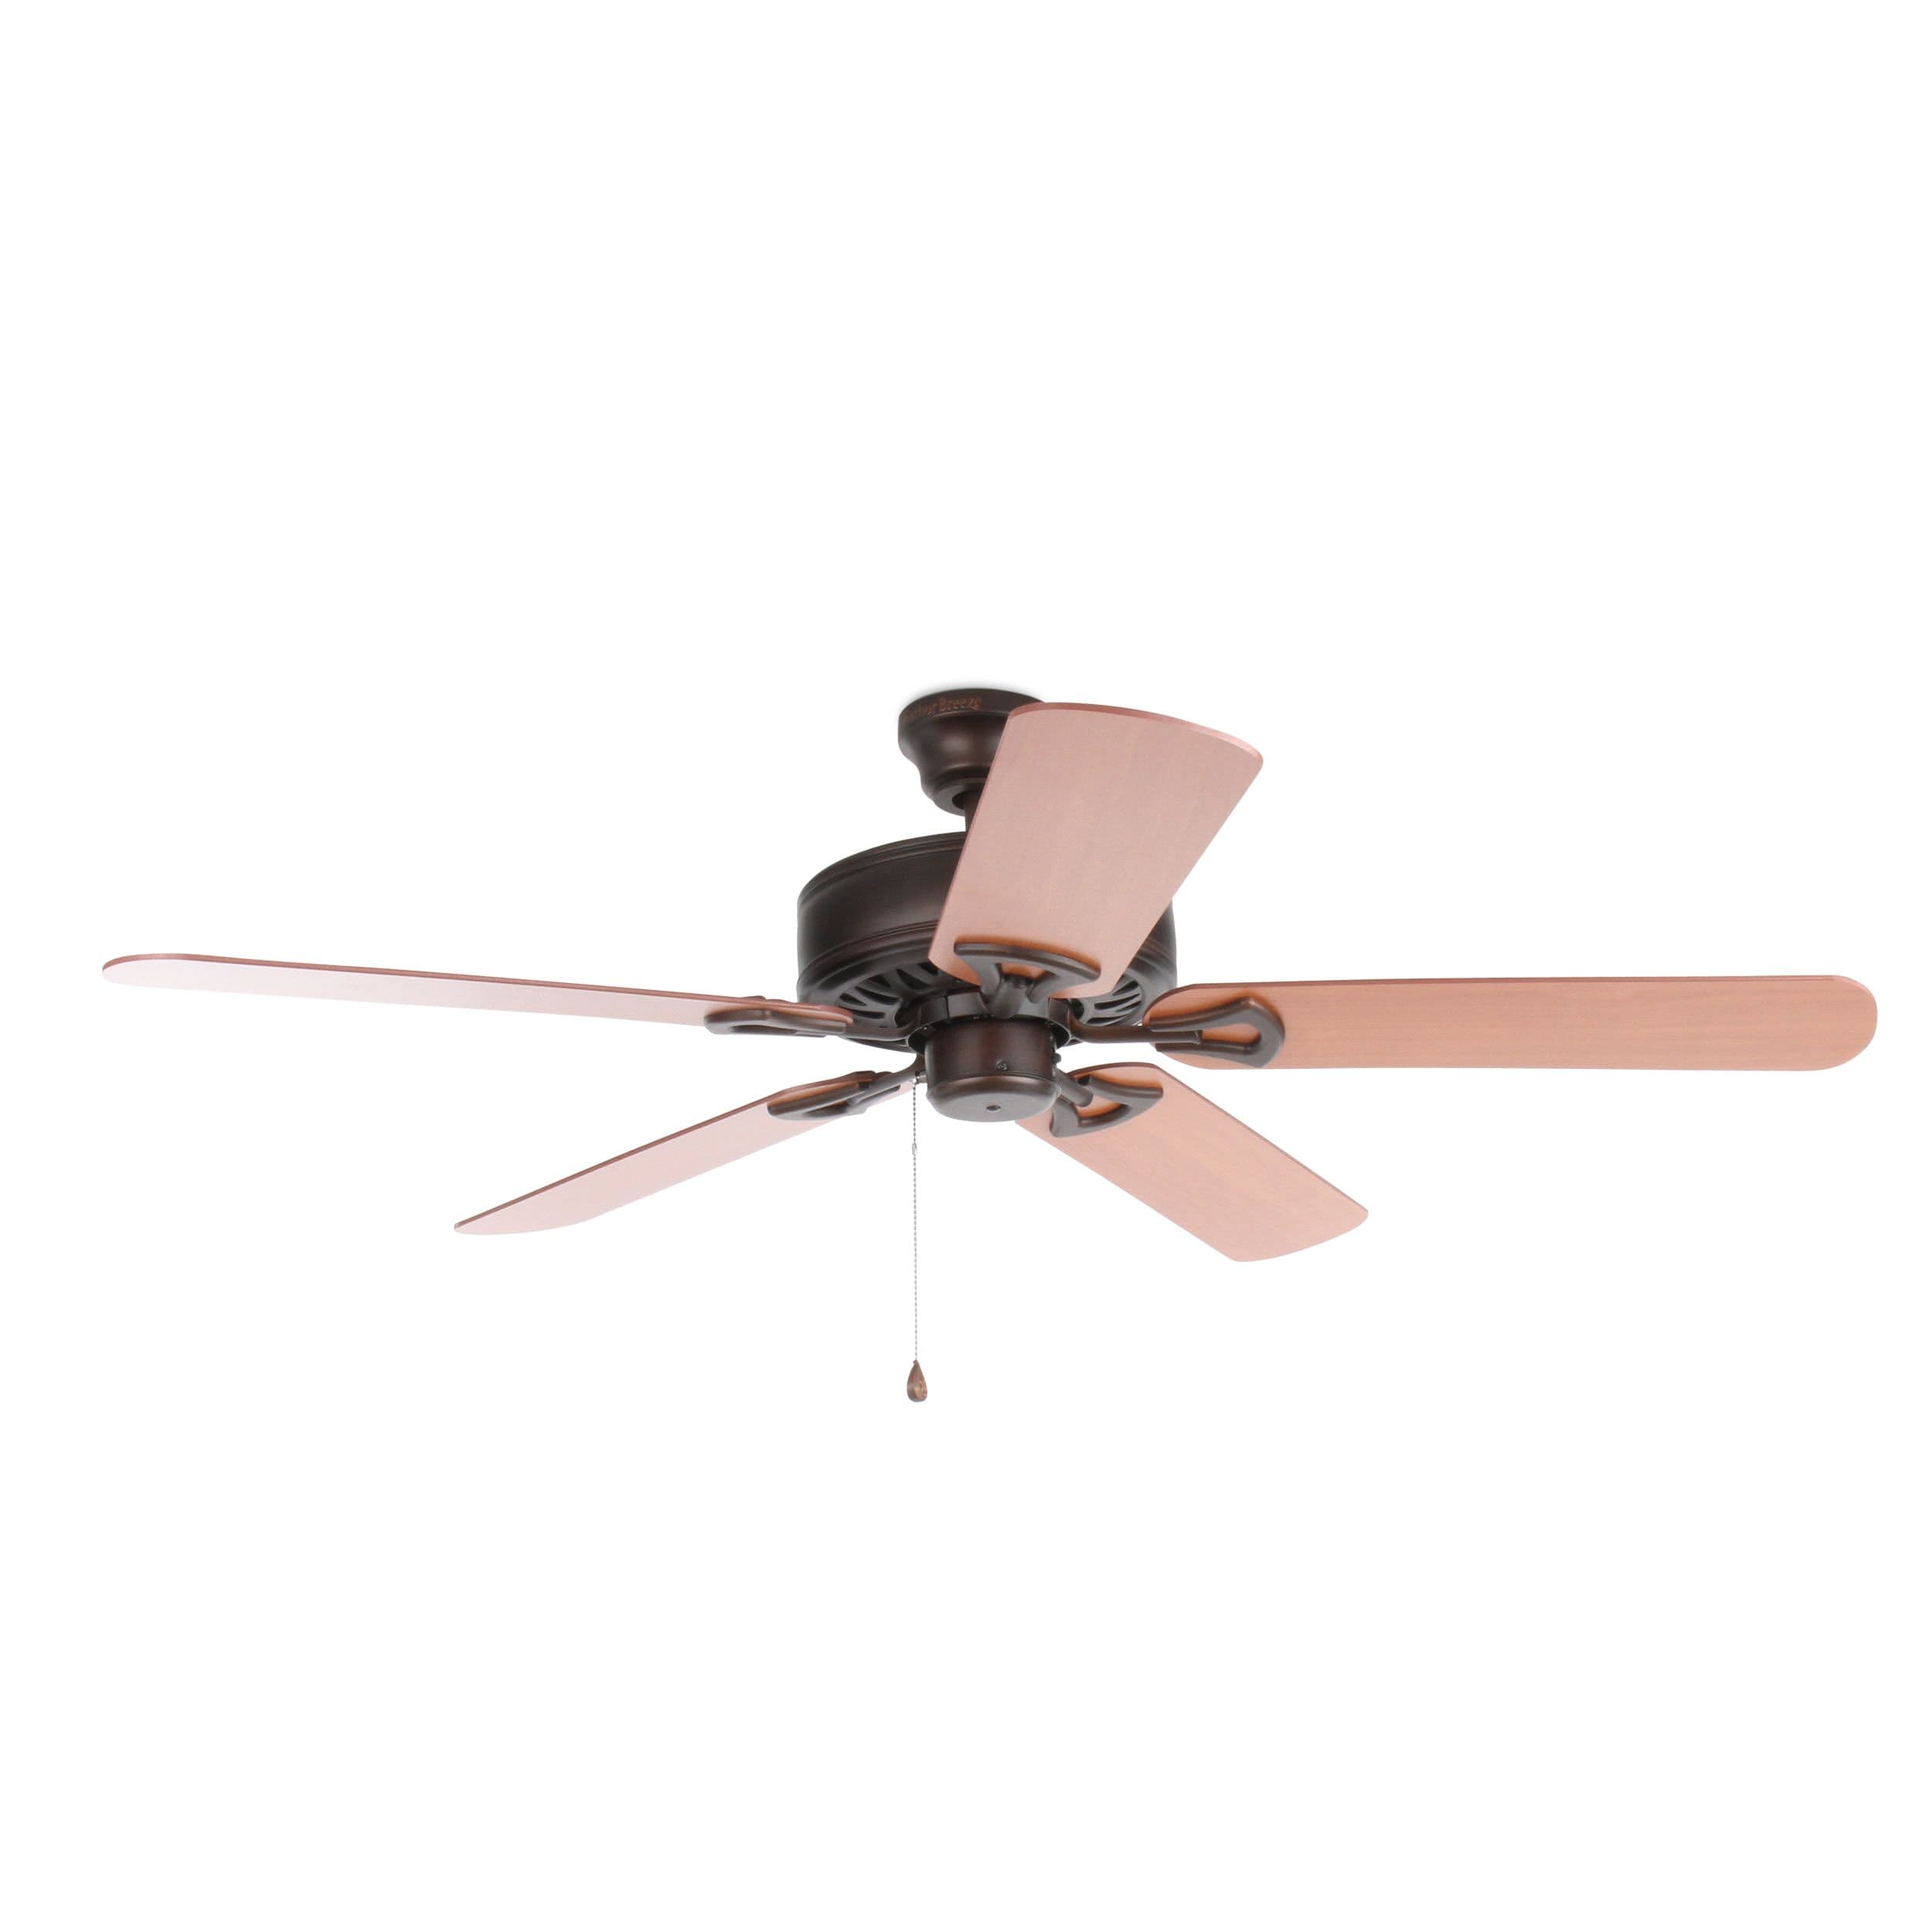 Harbor Breeze Indoor Ceiling Fan 5 Blades Wicker Inlay Cherry Finish Item 124596